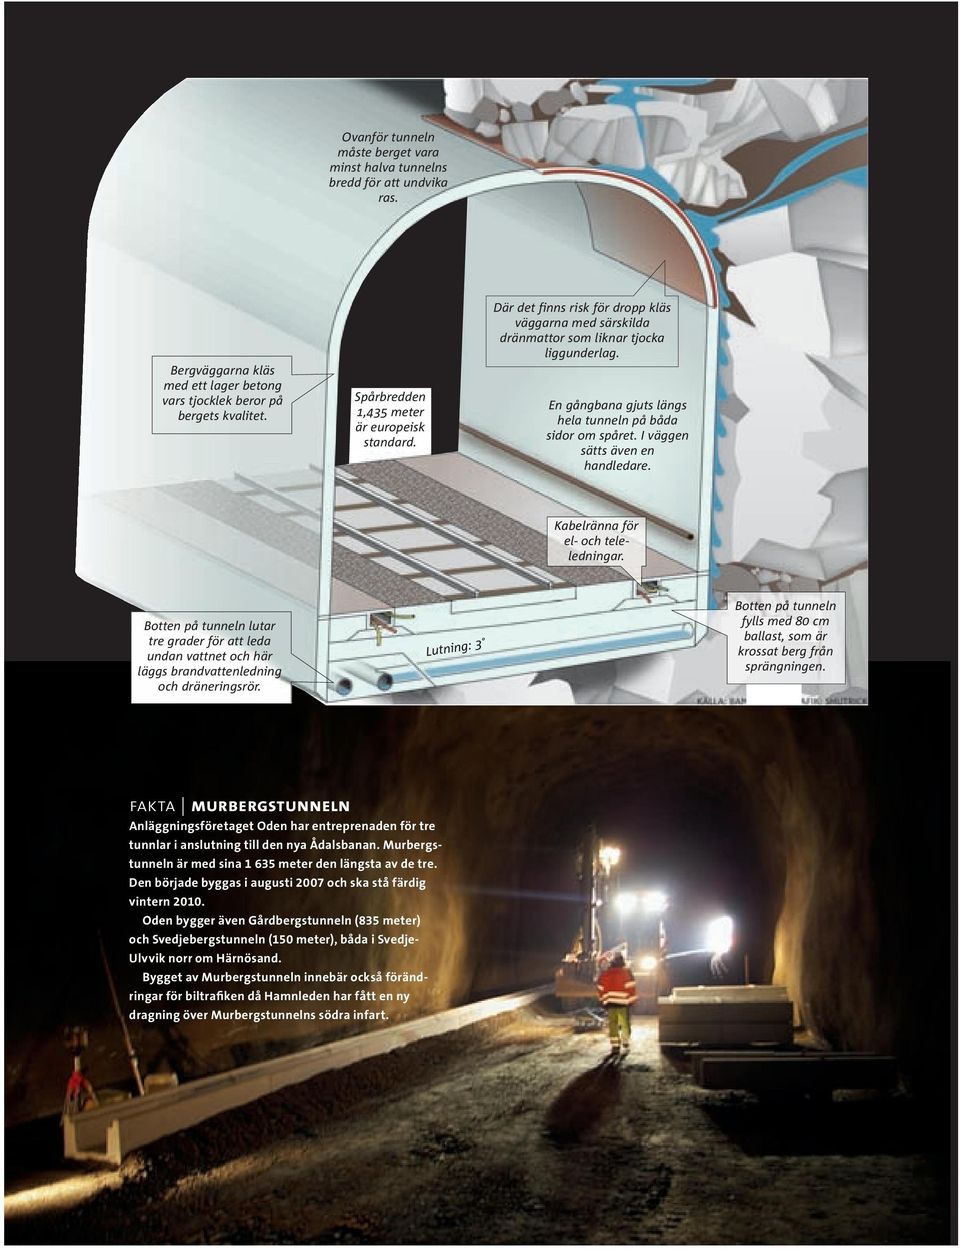 En gångbana gjuts längs hela tunneln på båda sidor om spåret. I väggen sätts även en handledare. Kabelränna för el- och teleledningar.